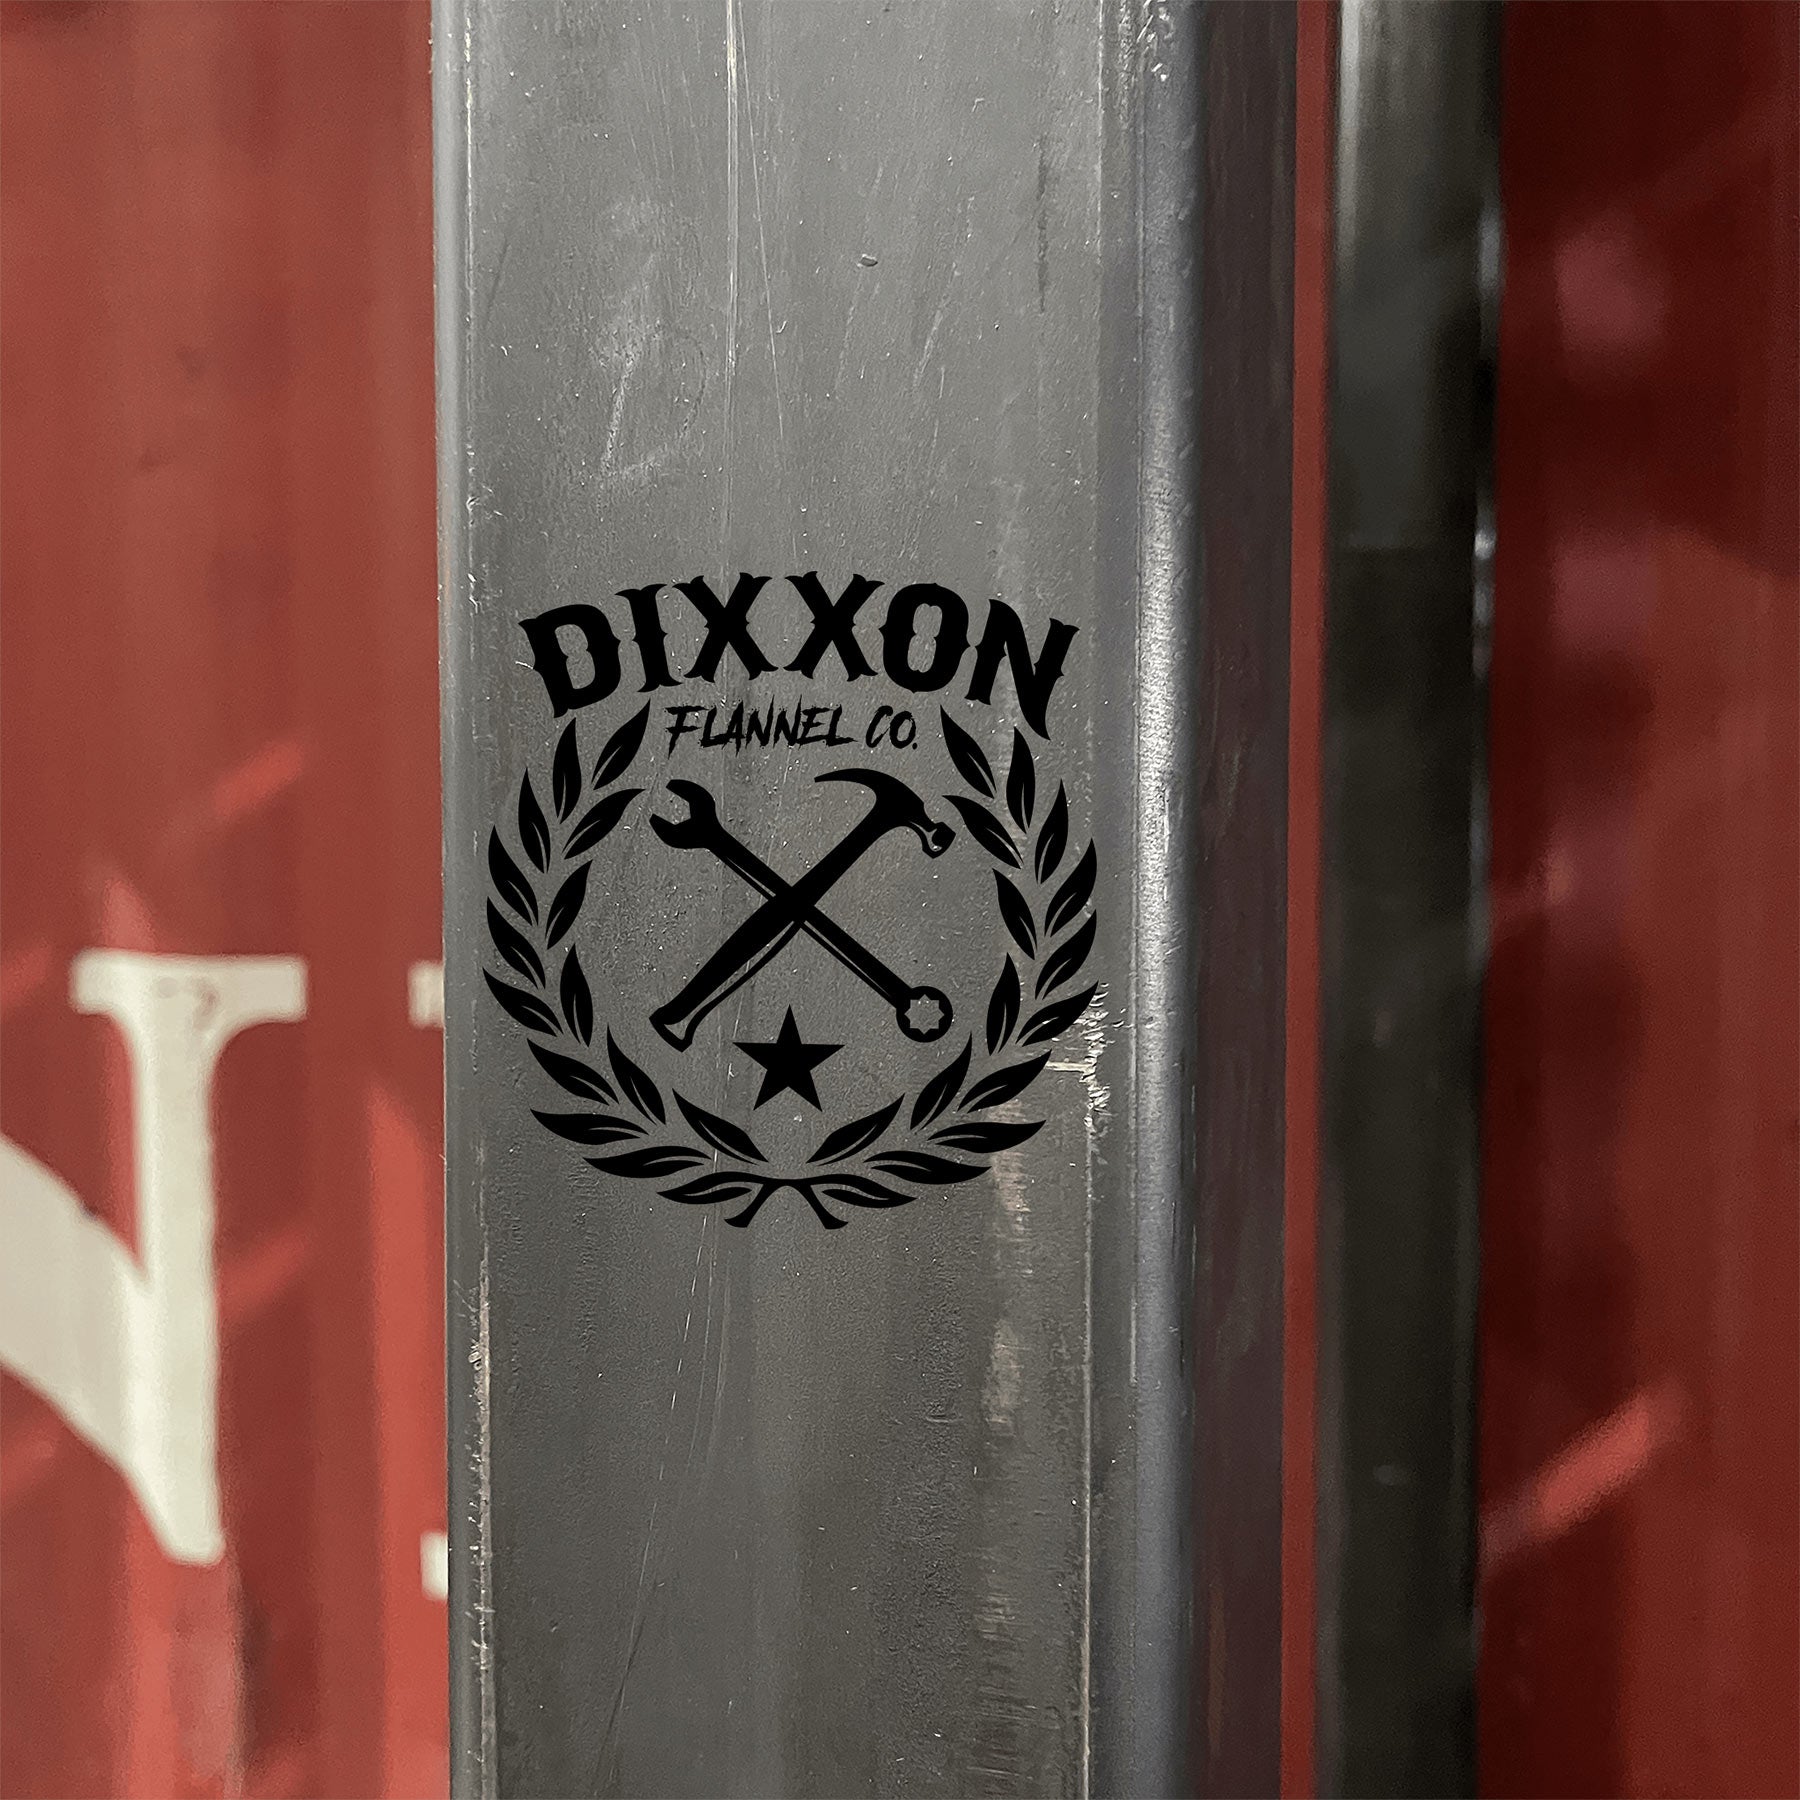 Crest 5" Die Cut Sticker - Black | Dixxon Flannel Co.